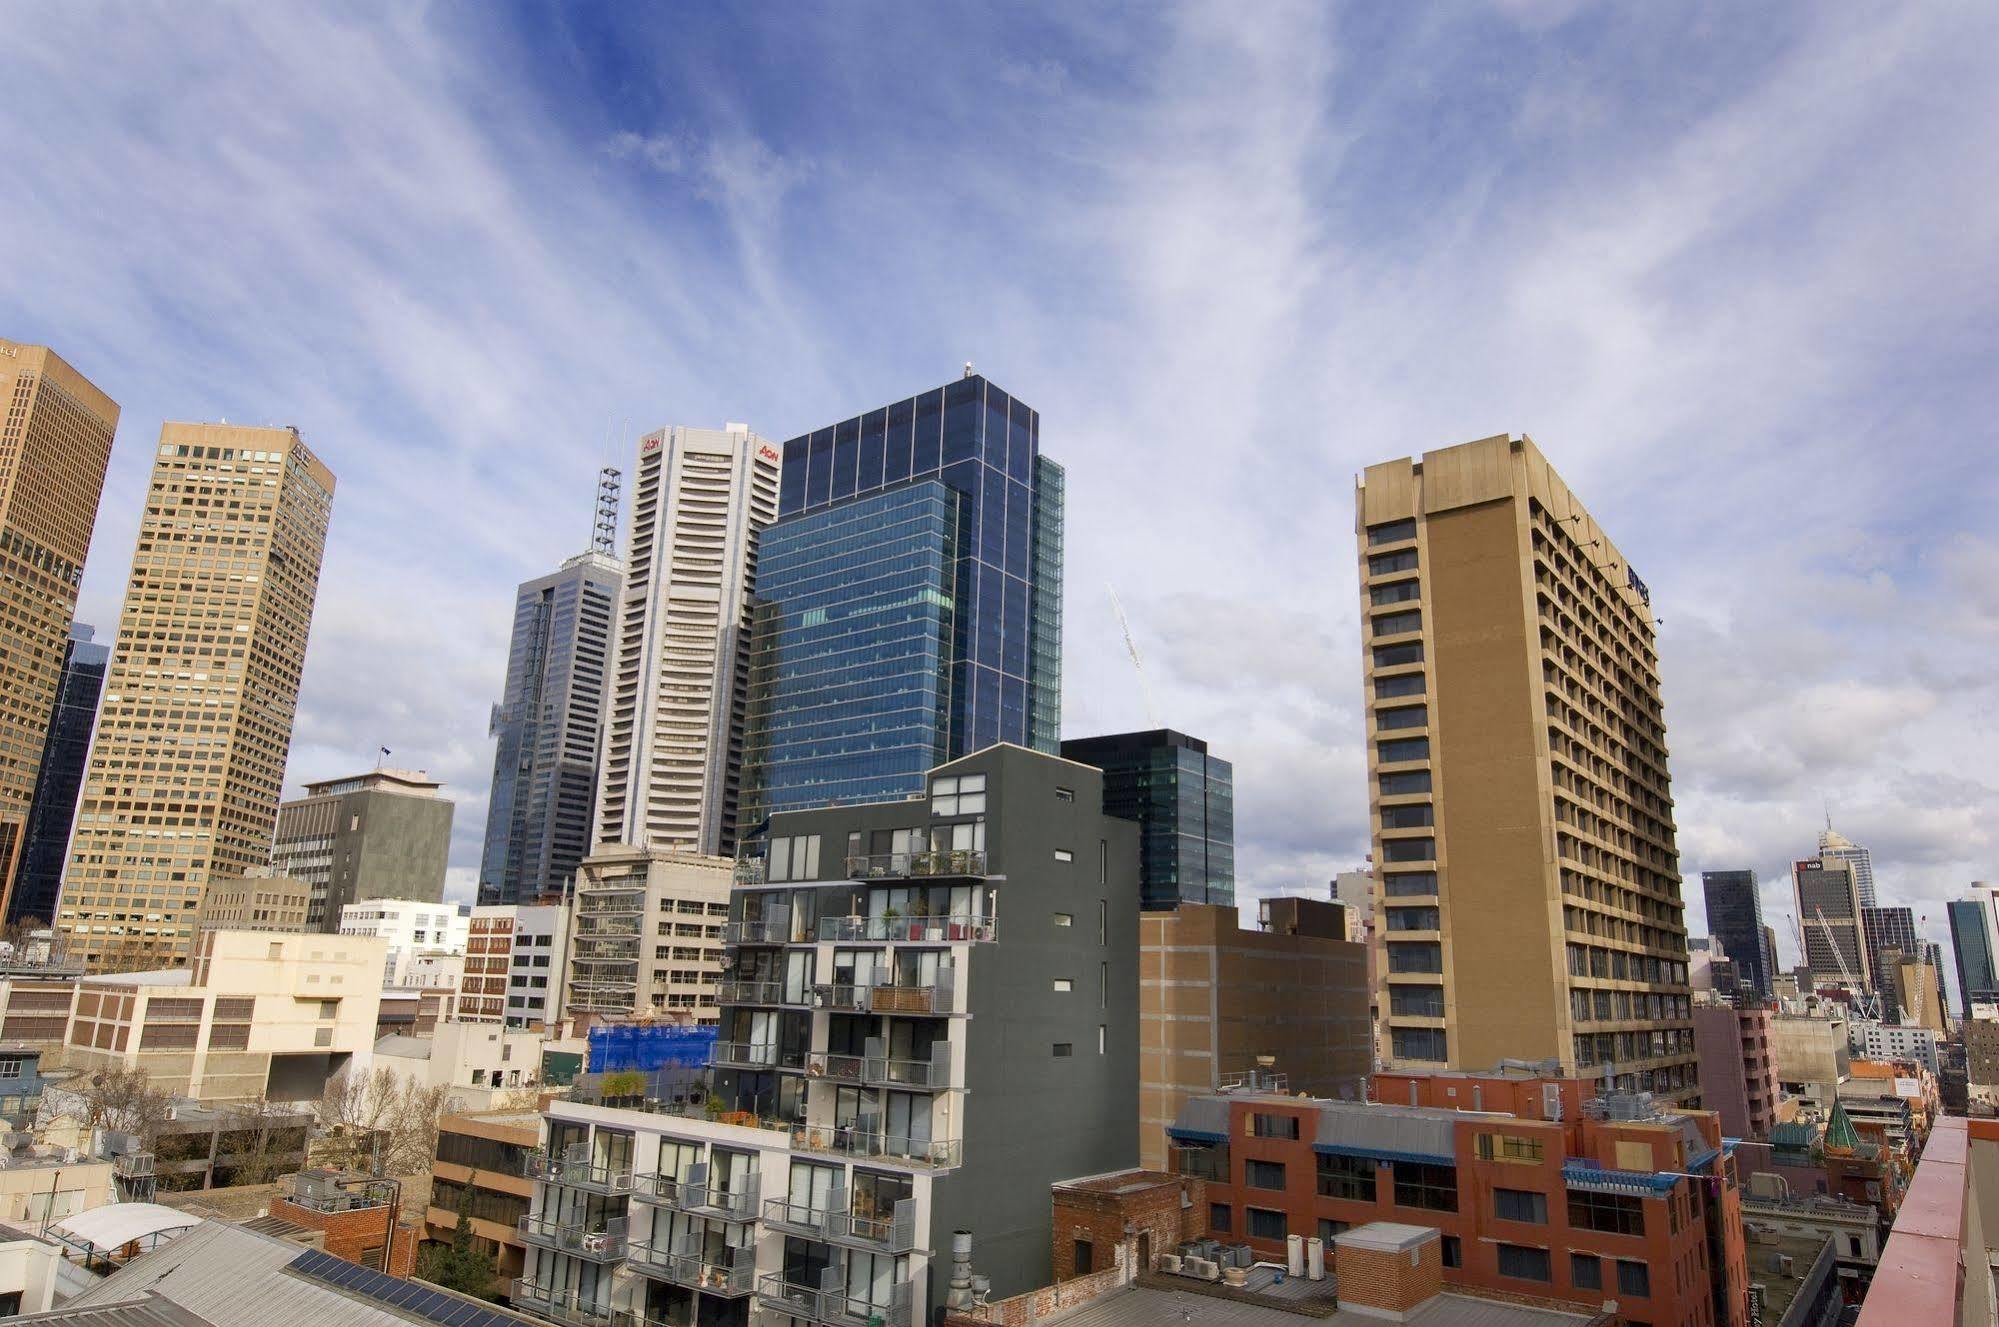 City Limits Hotel Apartments Melbourne Exterior photo